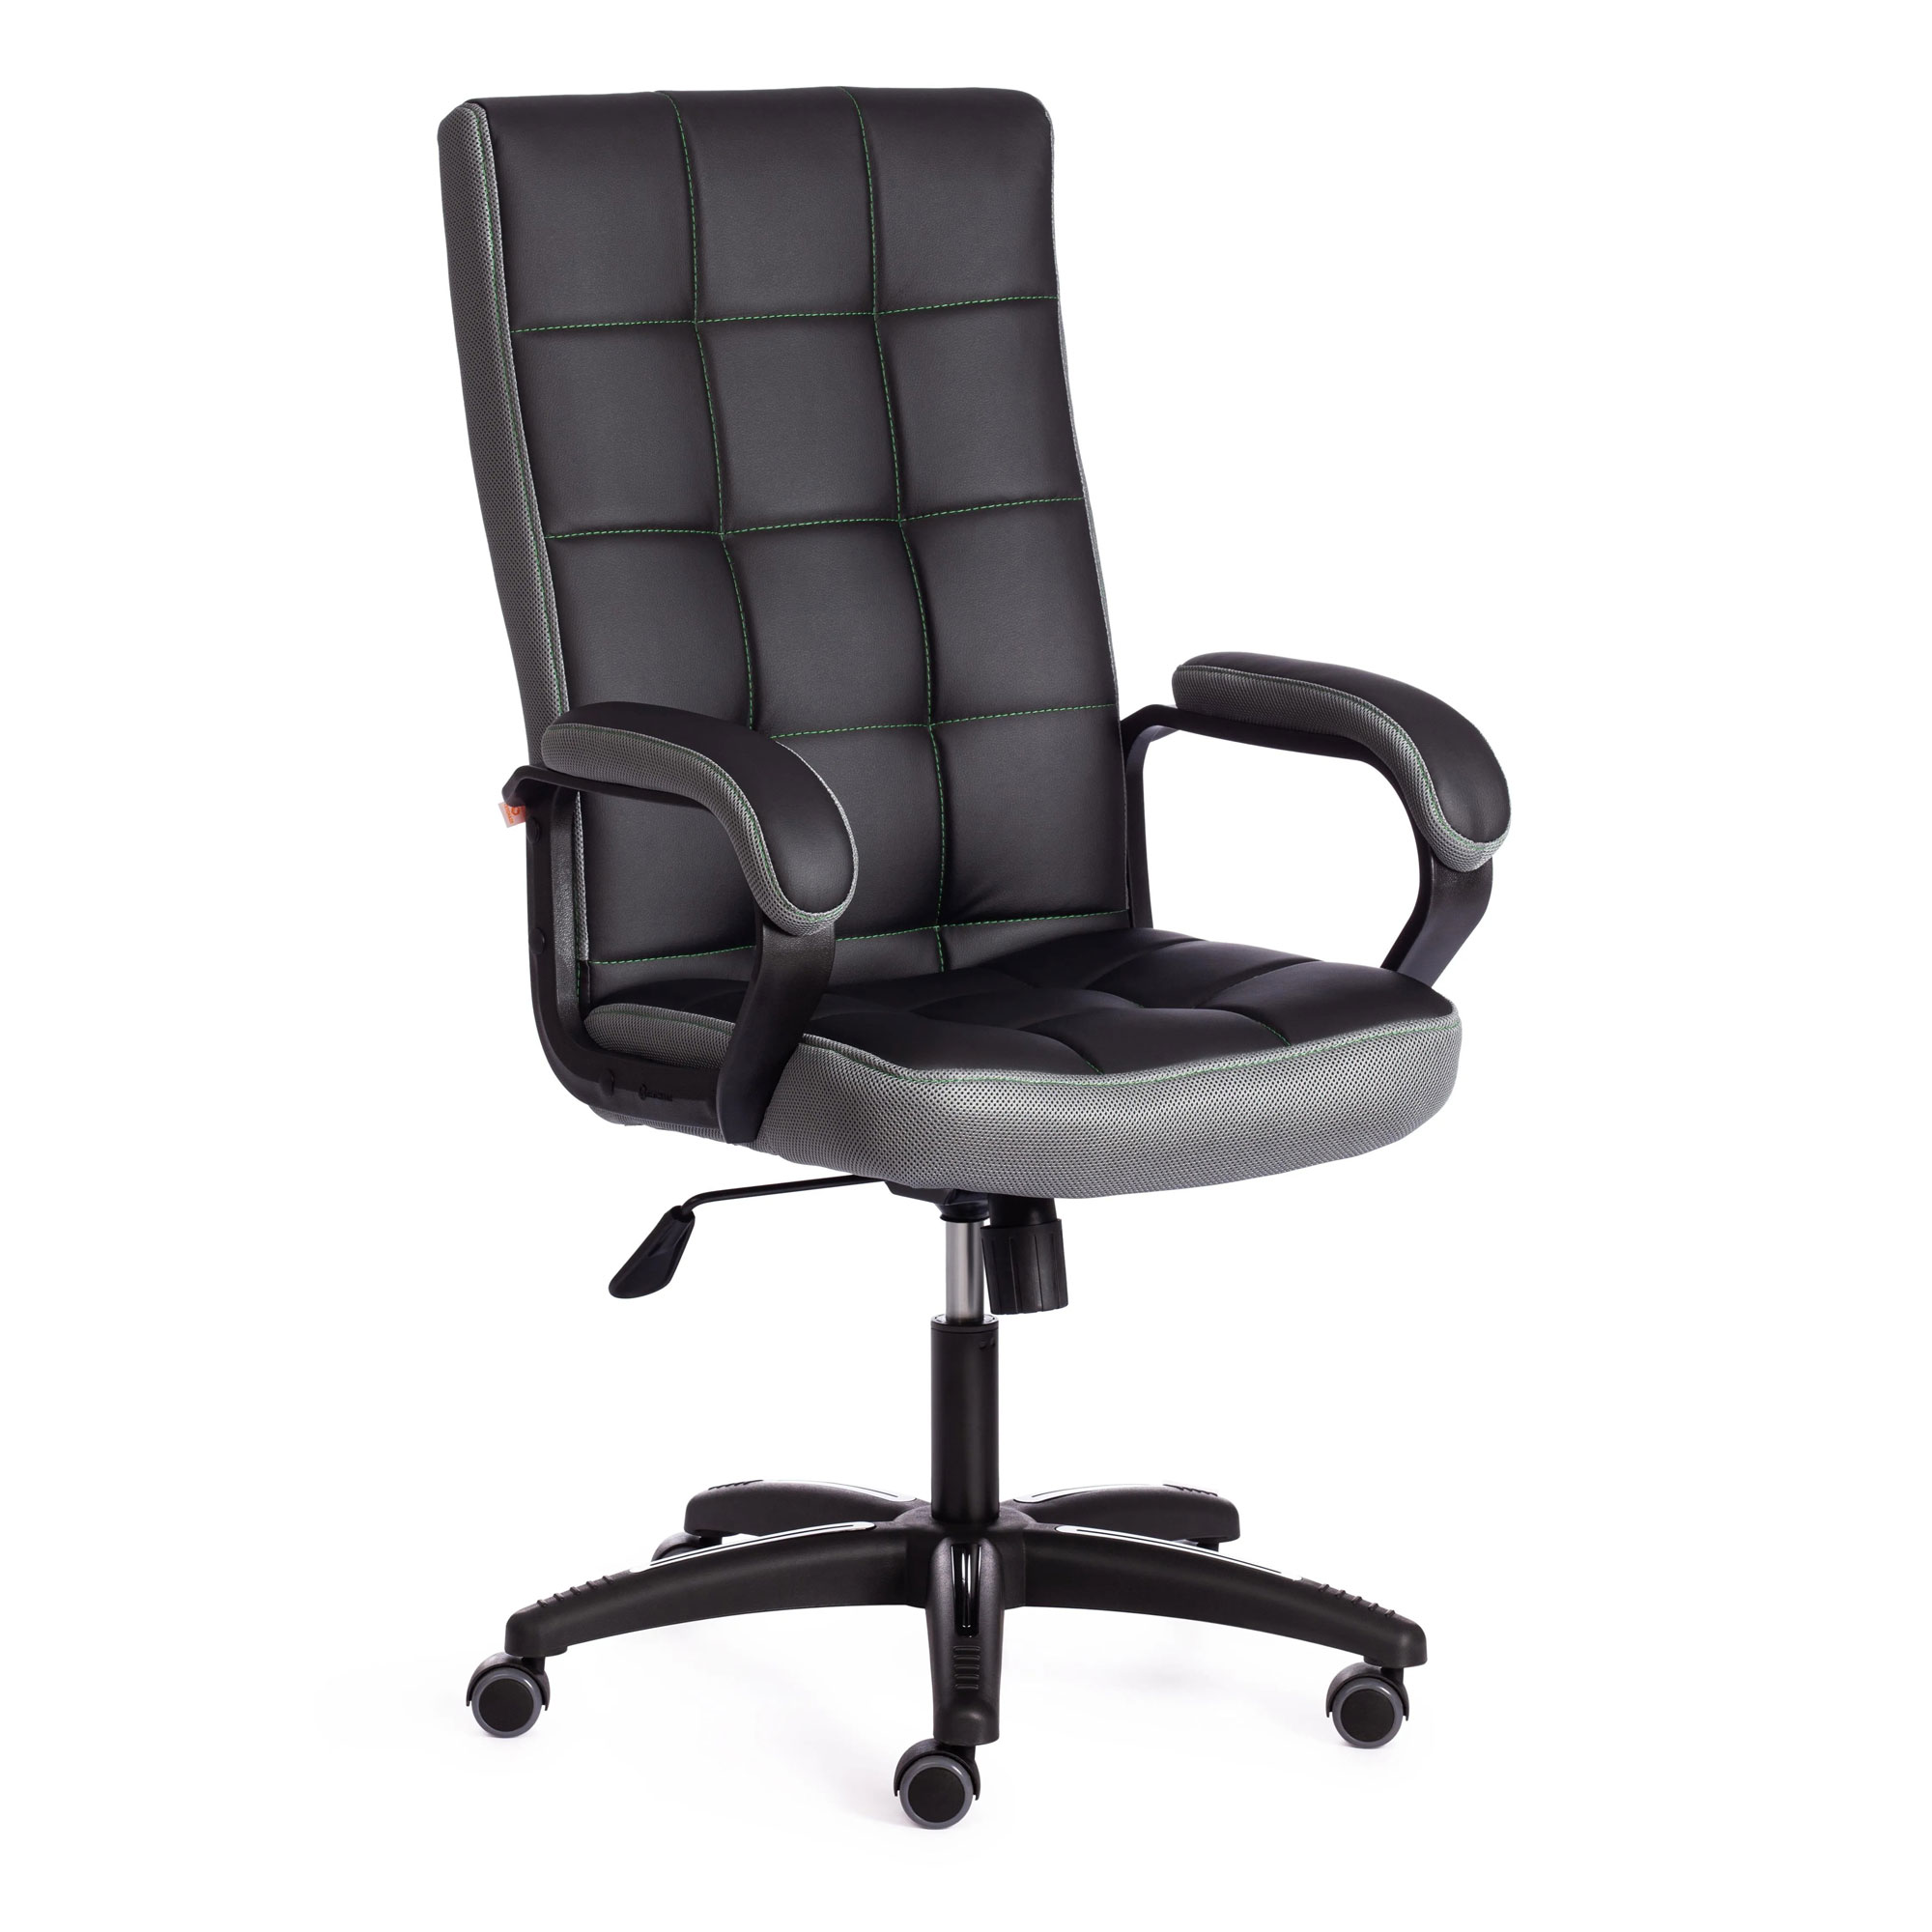 Кресло компьютерное TC искусственная кожа чёрное с серым 61х47х126 см кресло компьютерное tc driver искусственная кожа чёрное 55х49х126 см